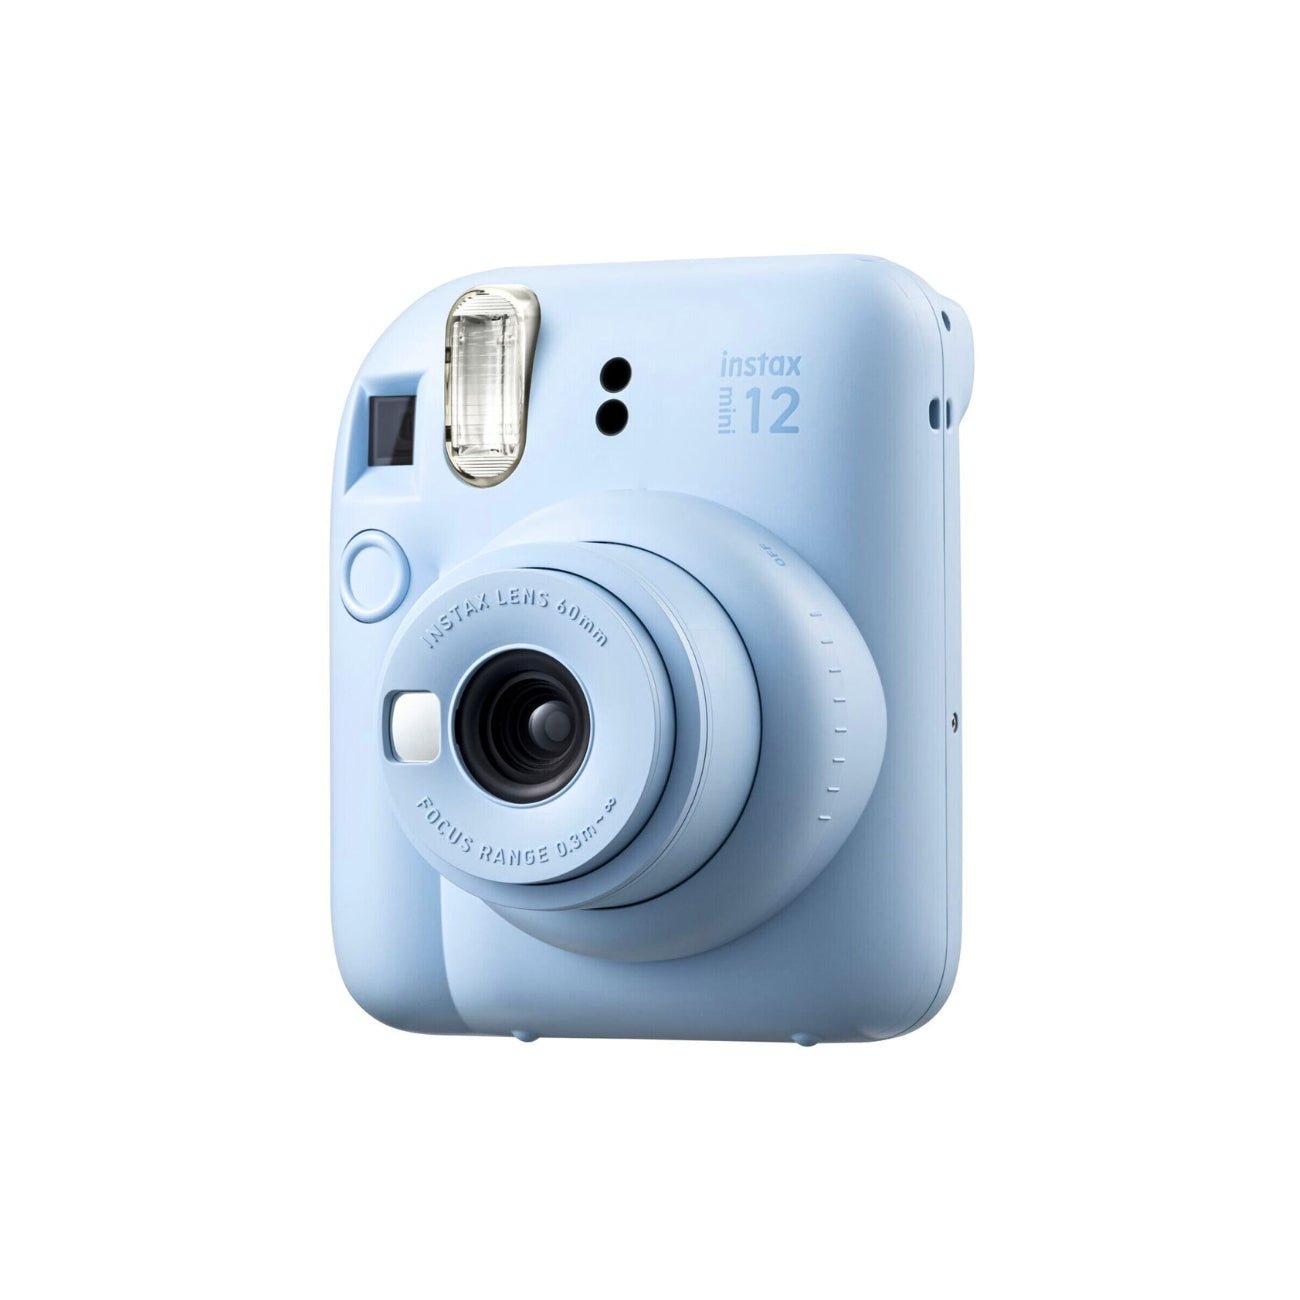 Fujifilm Instax Mini 8 Film Camera Kit - Blue UK